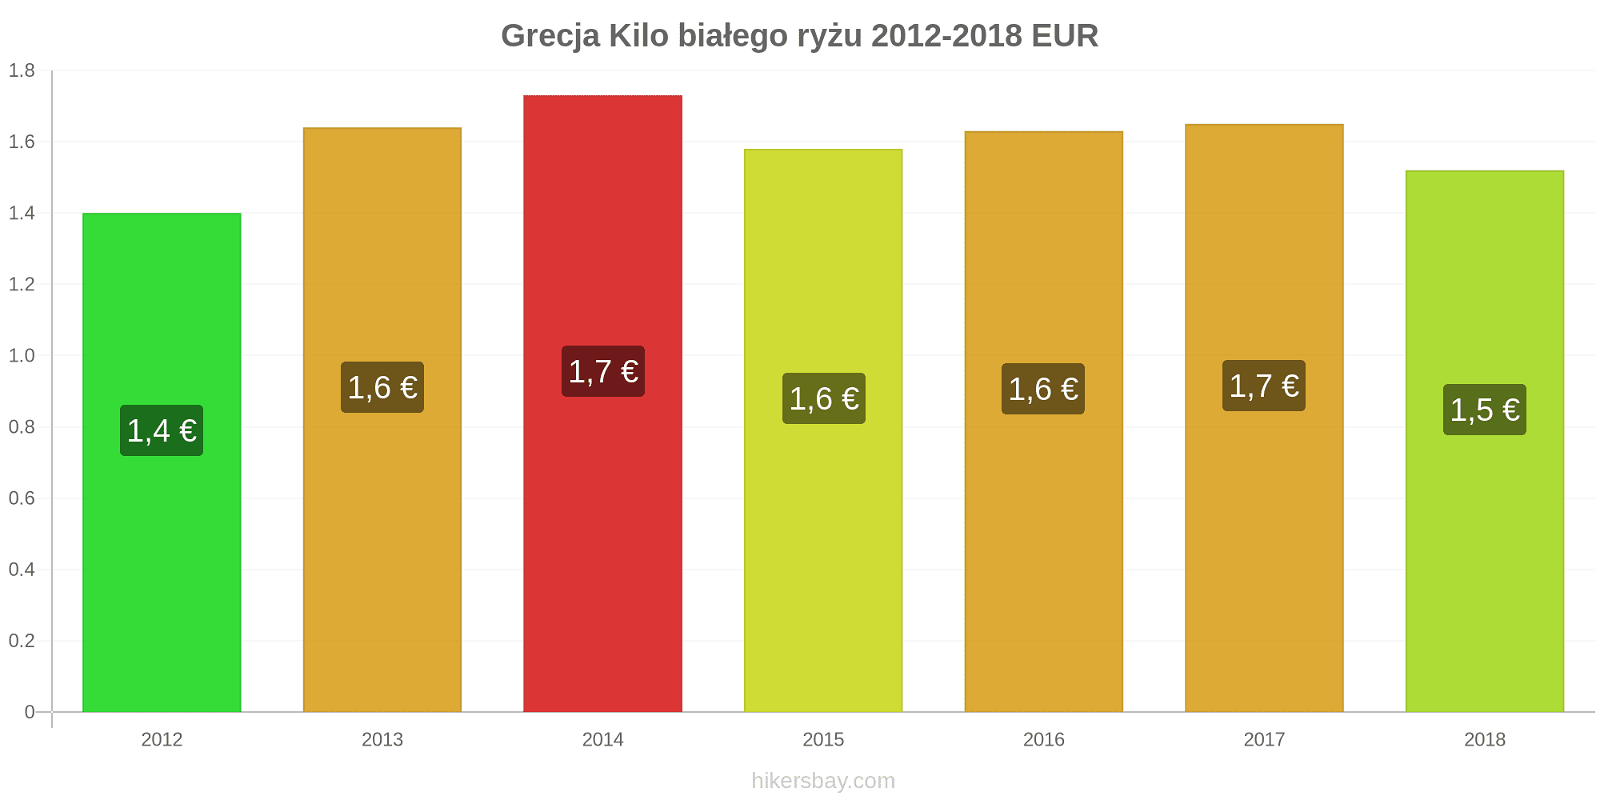 Grecja zmiany cen Kilo białego ryżu hikersbay.com